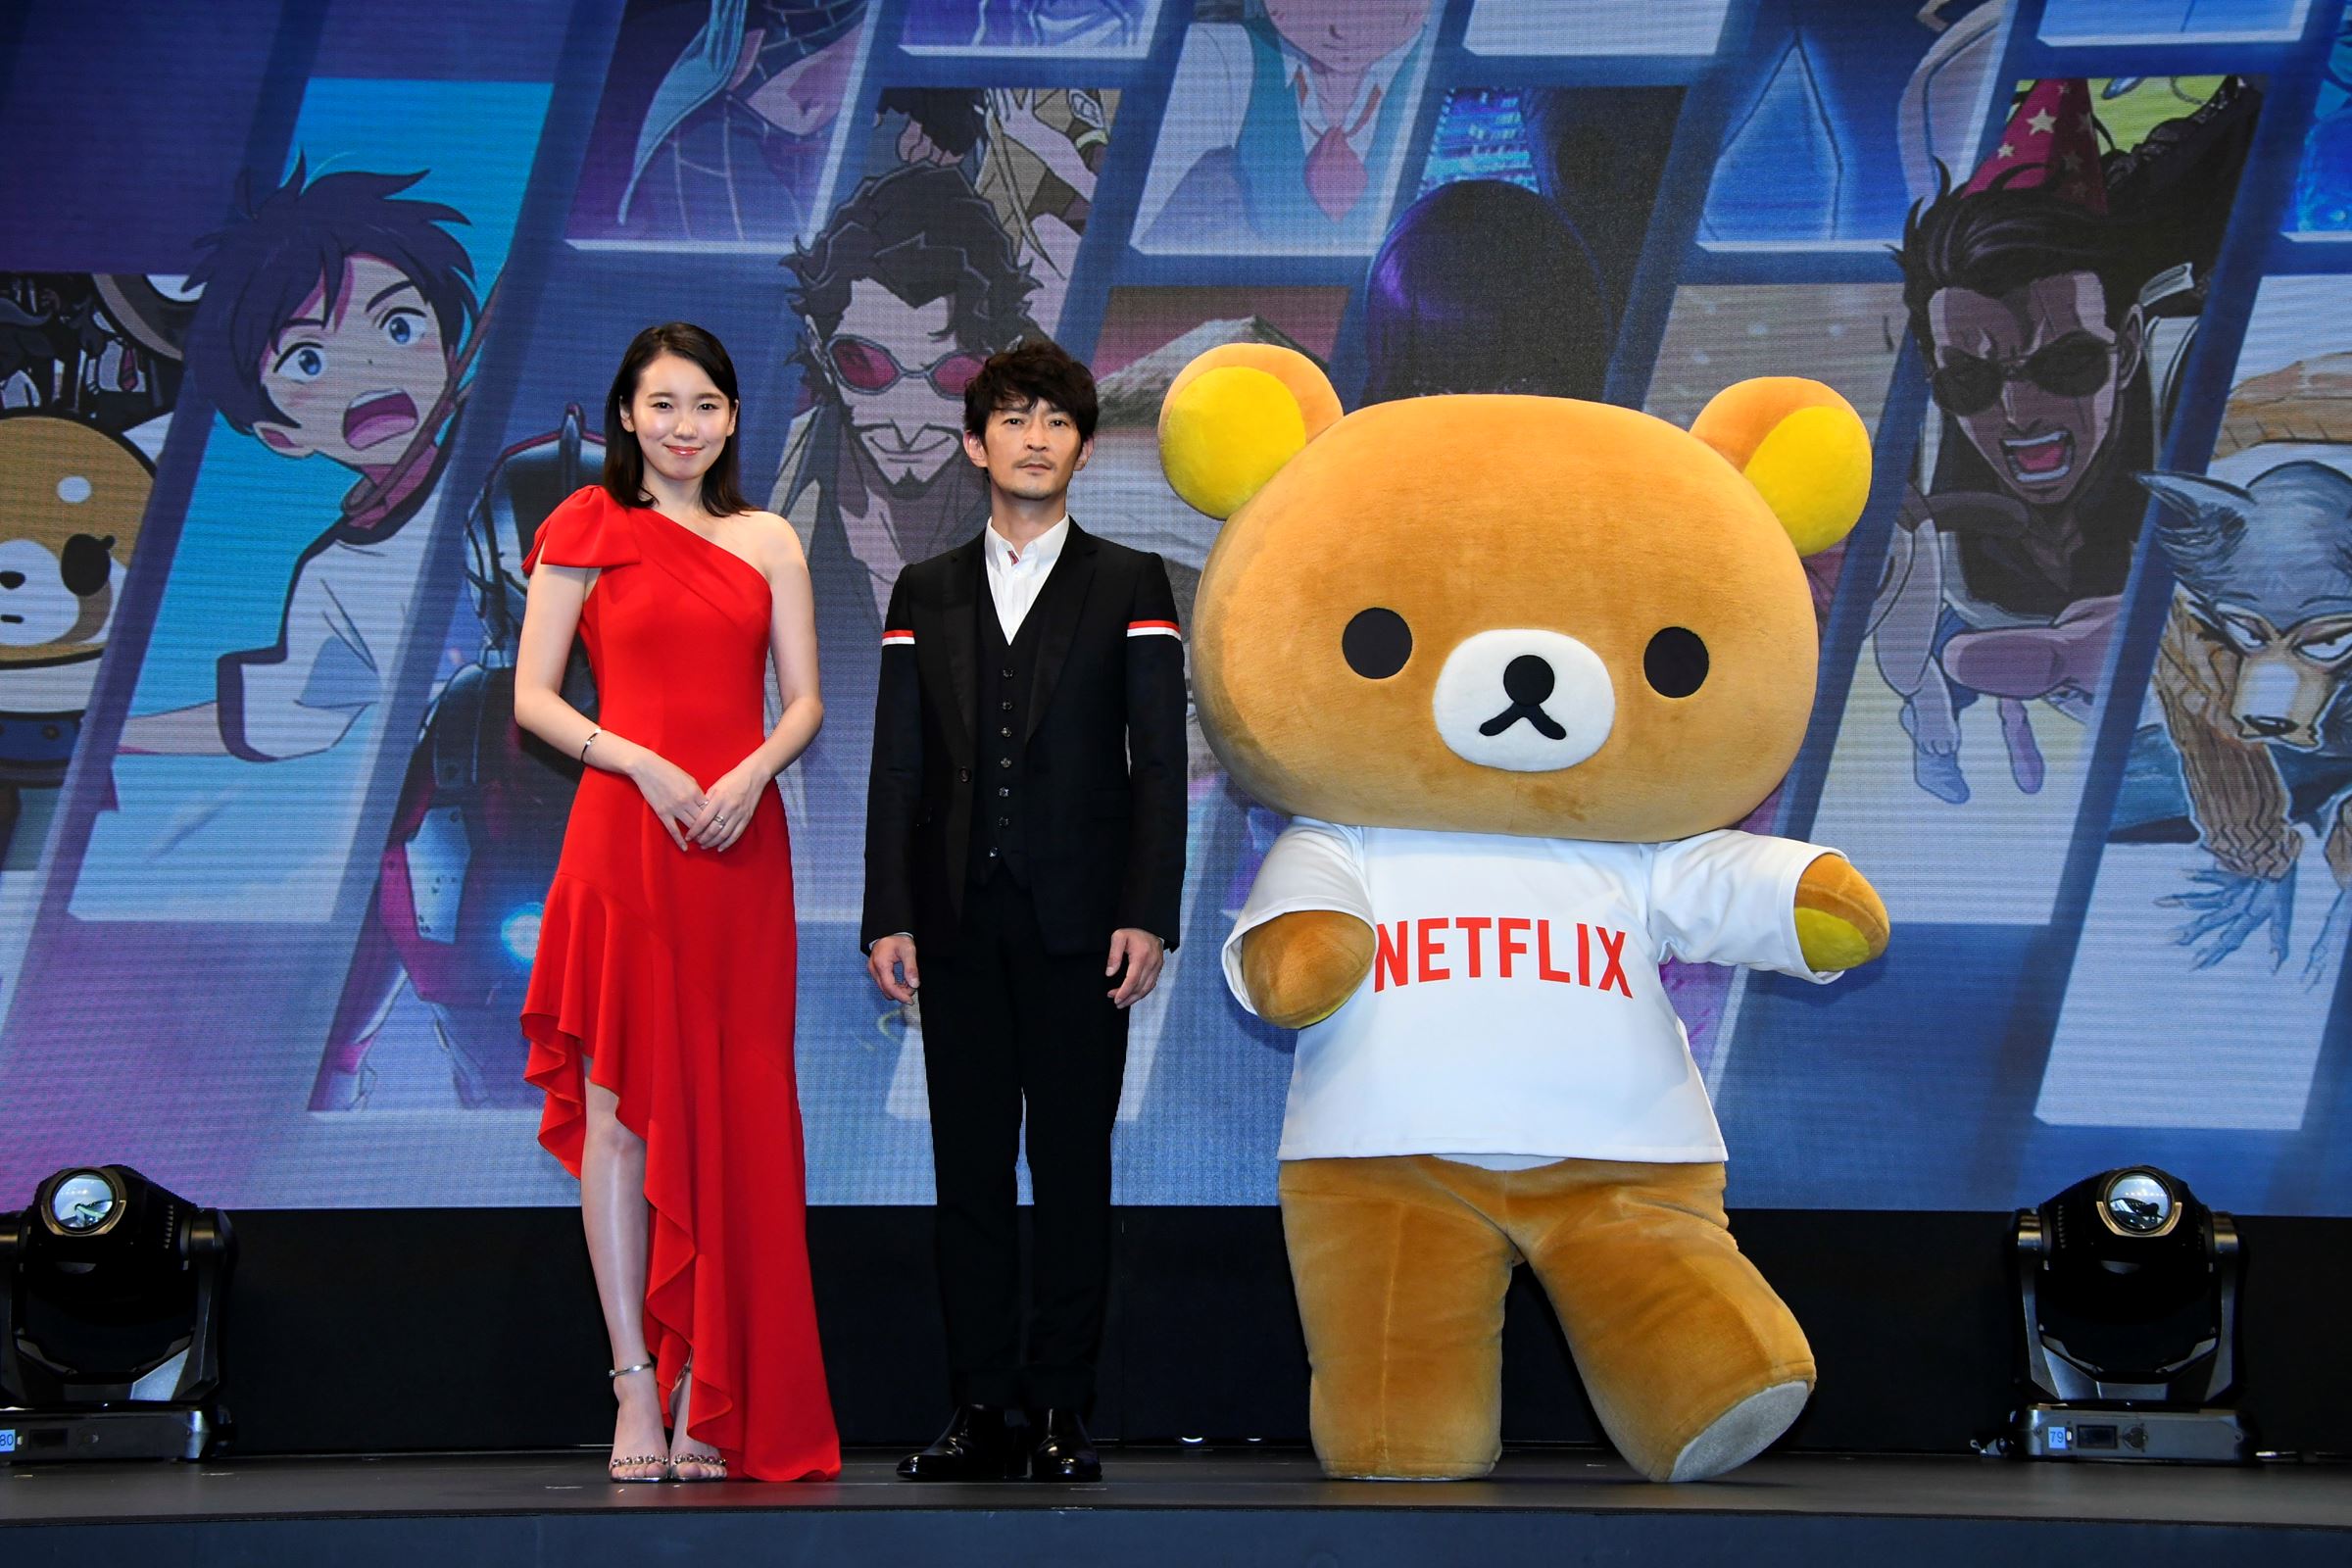 「Netflix Festival Japan 2021」